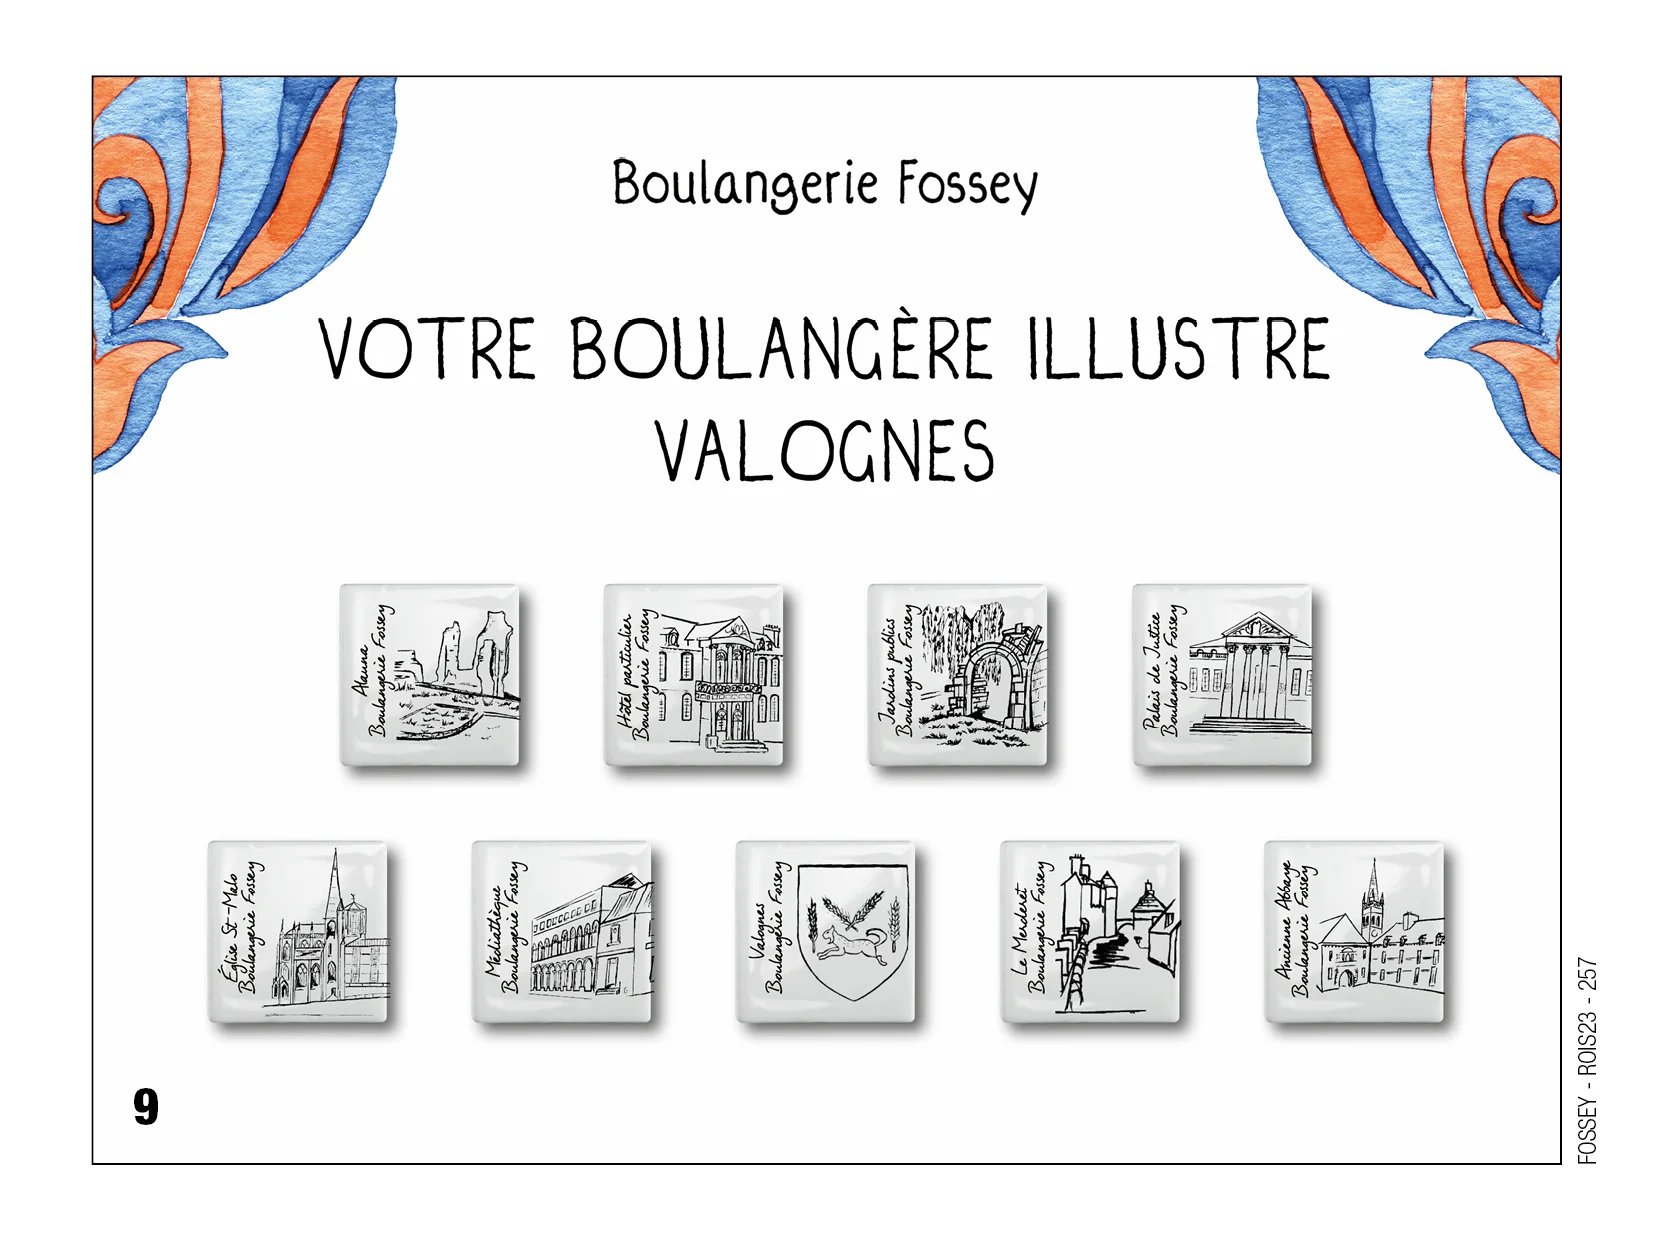 Fèves personnalisées boulangerie Fossey à Valognes